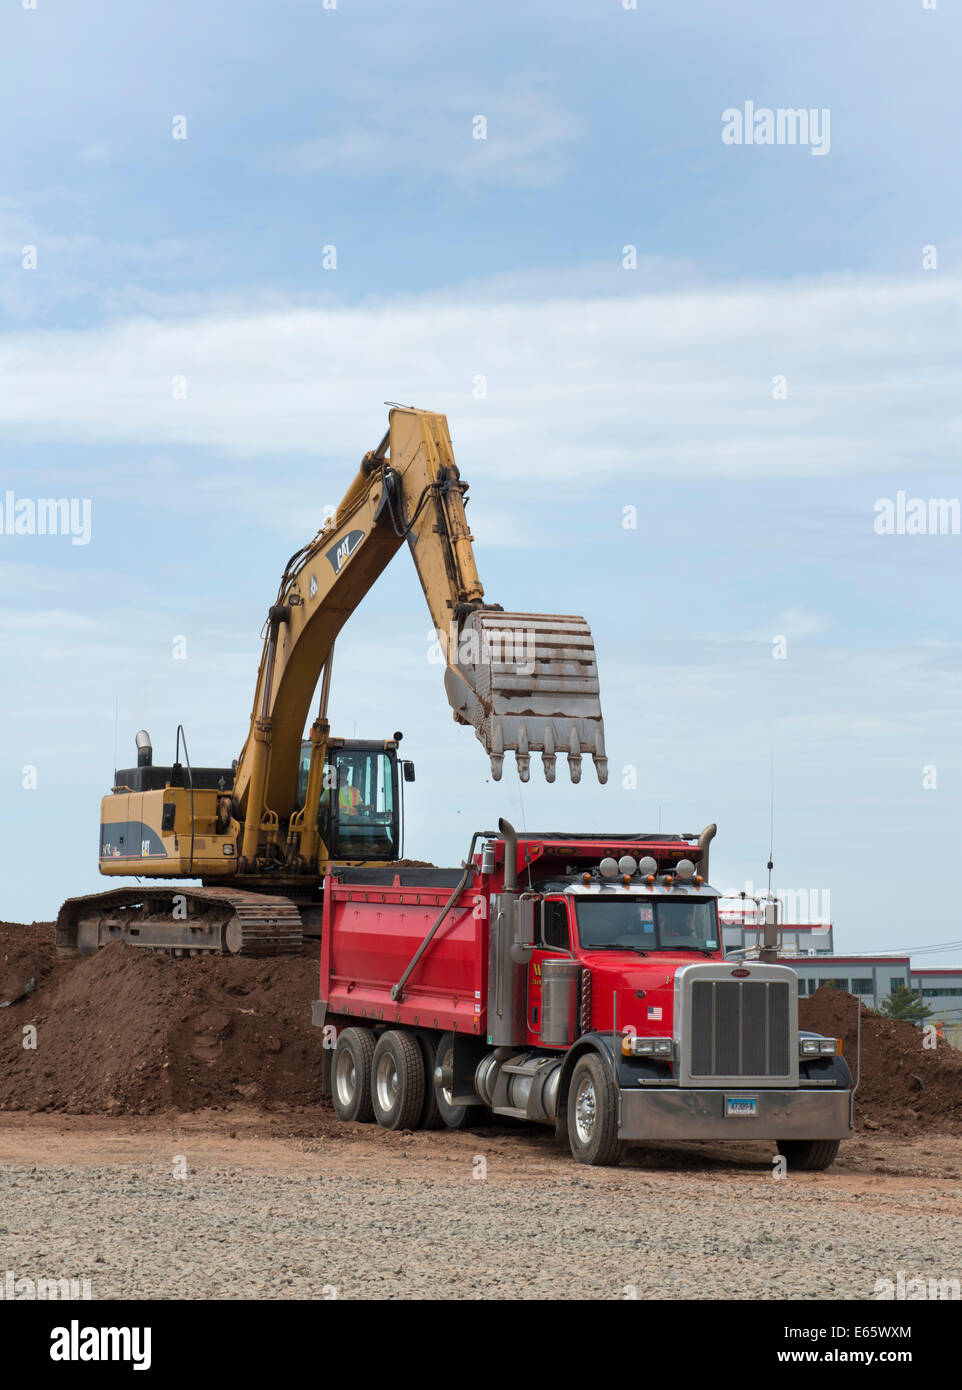 Excavatrice Caterpillar charges jusqu'a Peterbilt dump truck sur la réutilisation pour pile I-95 New Haven Harbour Crossing. Banque D'Images